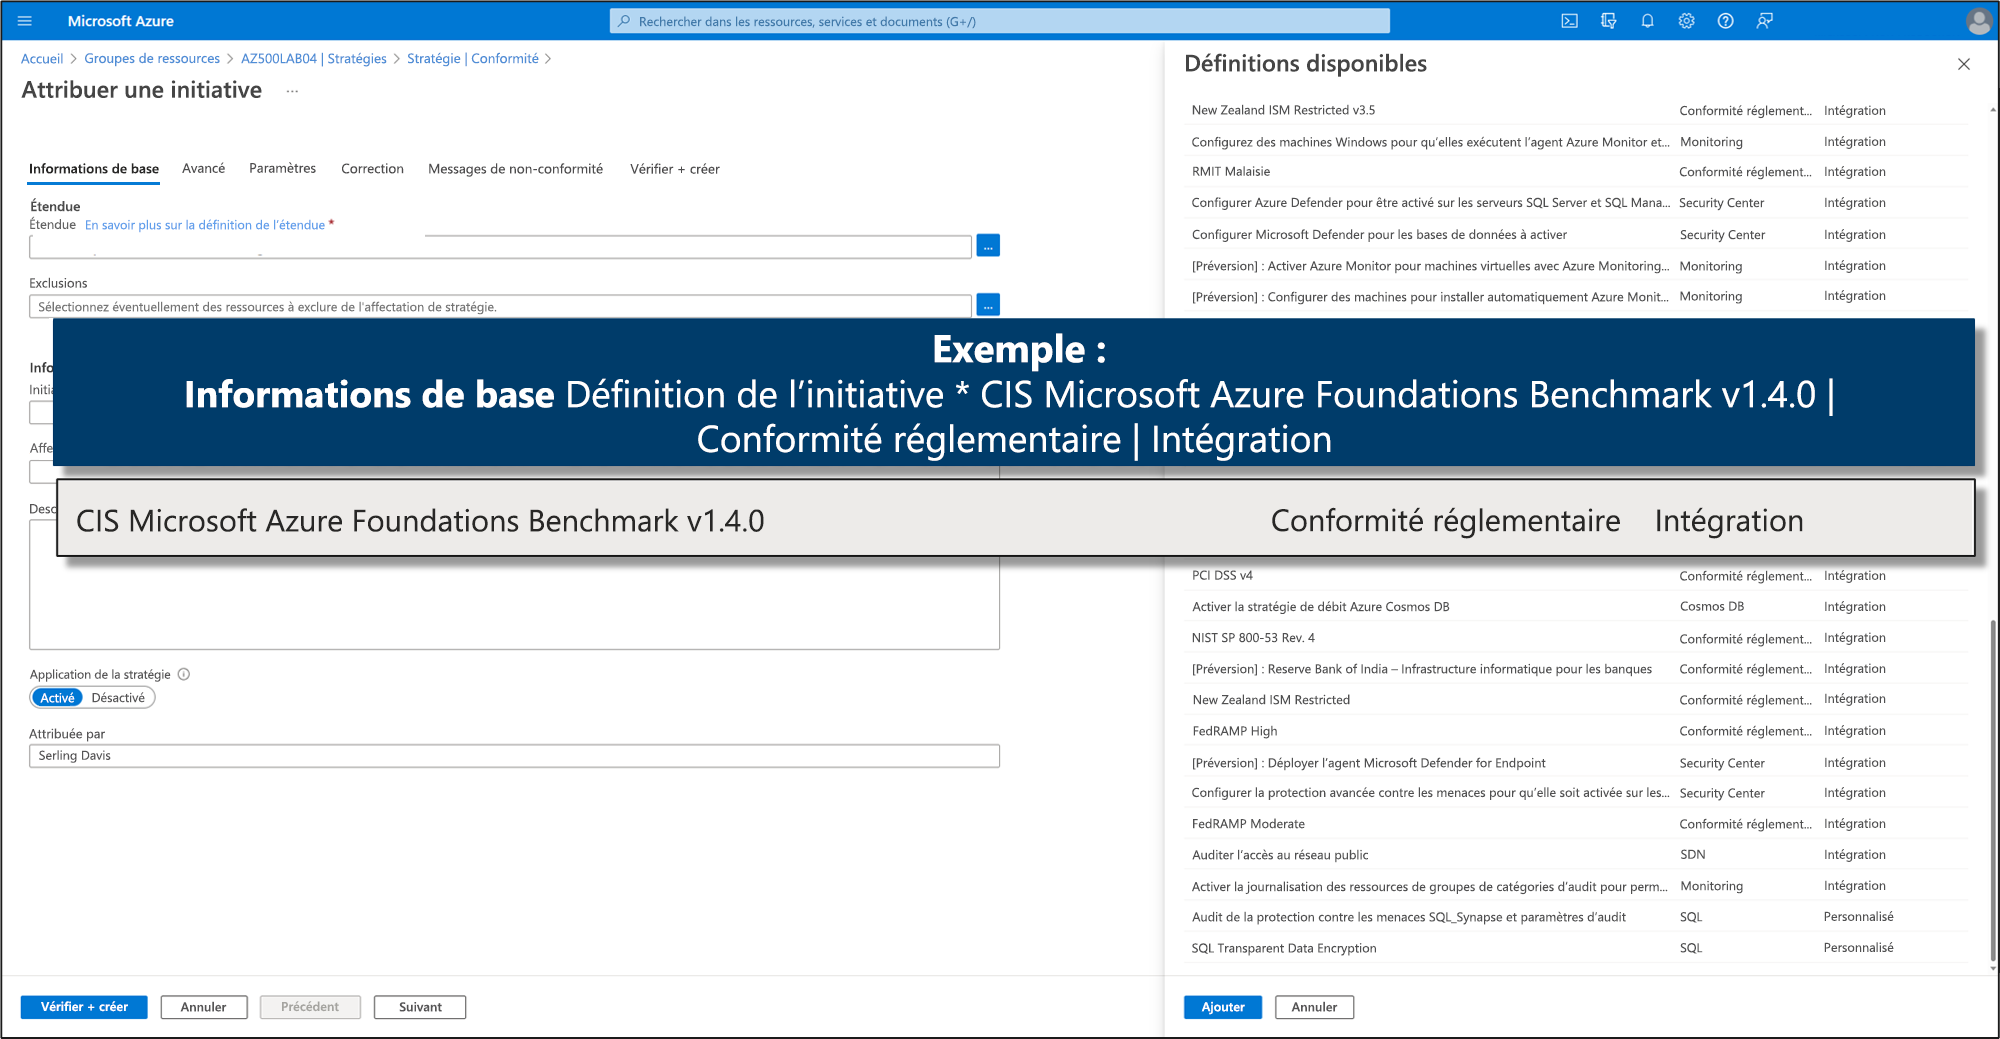 Capture d’écran montrant un exemple du CIS Microsoft Azure Foundations Benchmark.